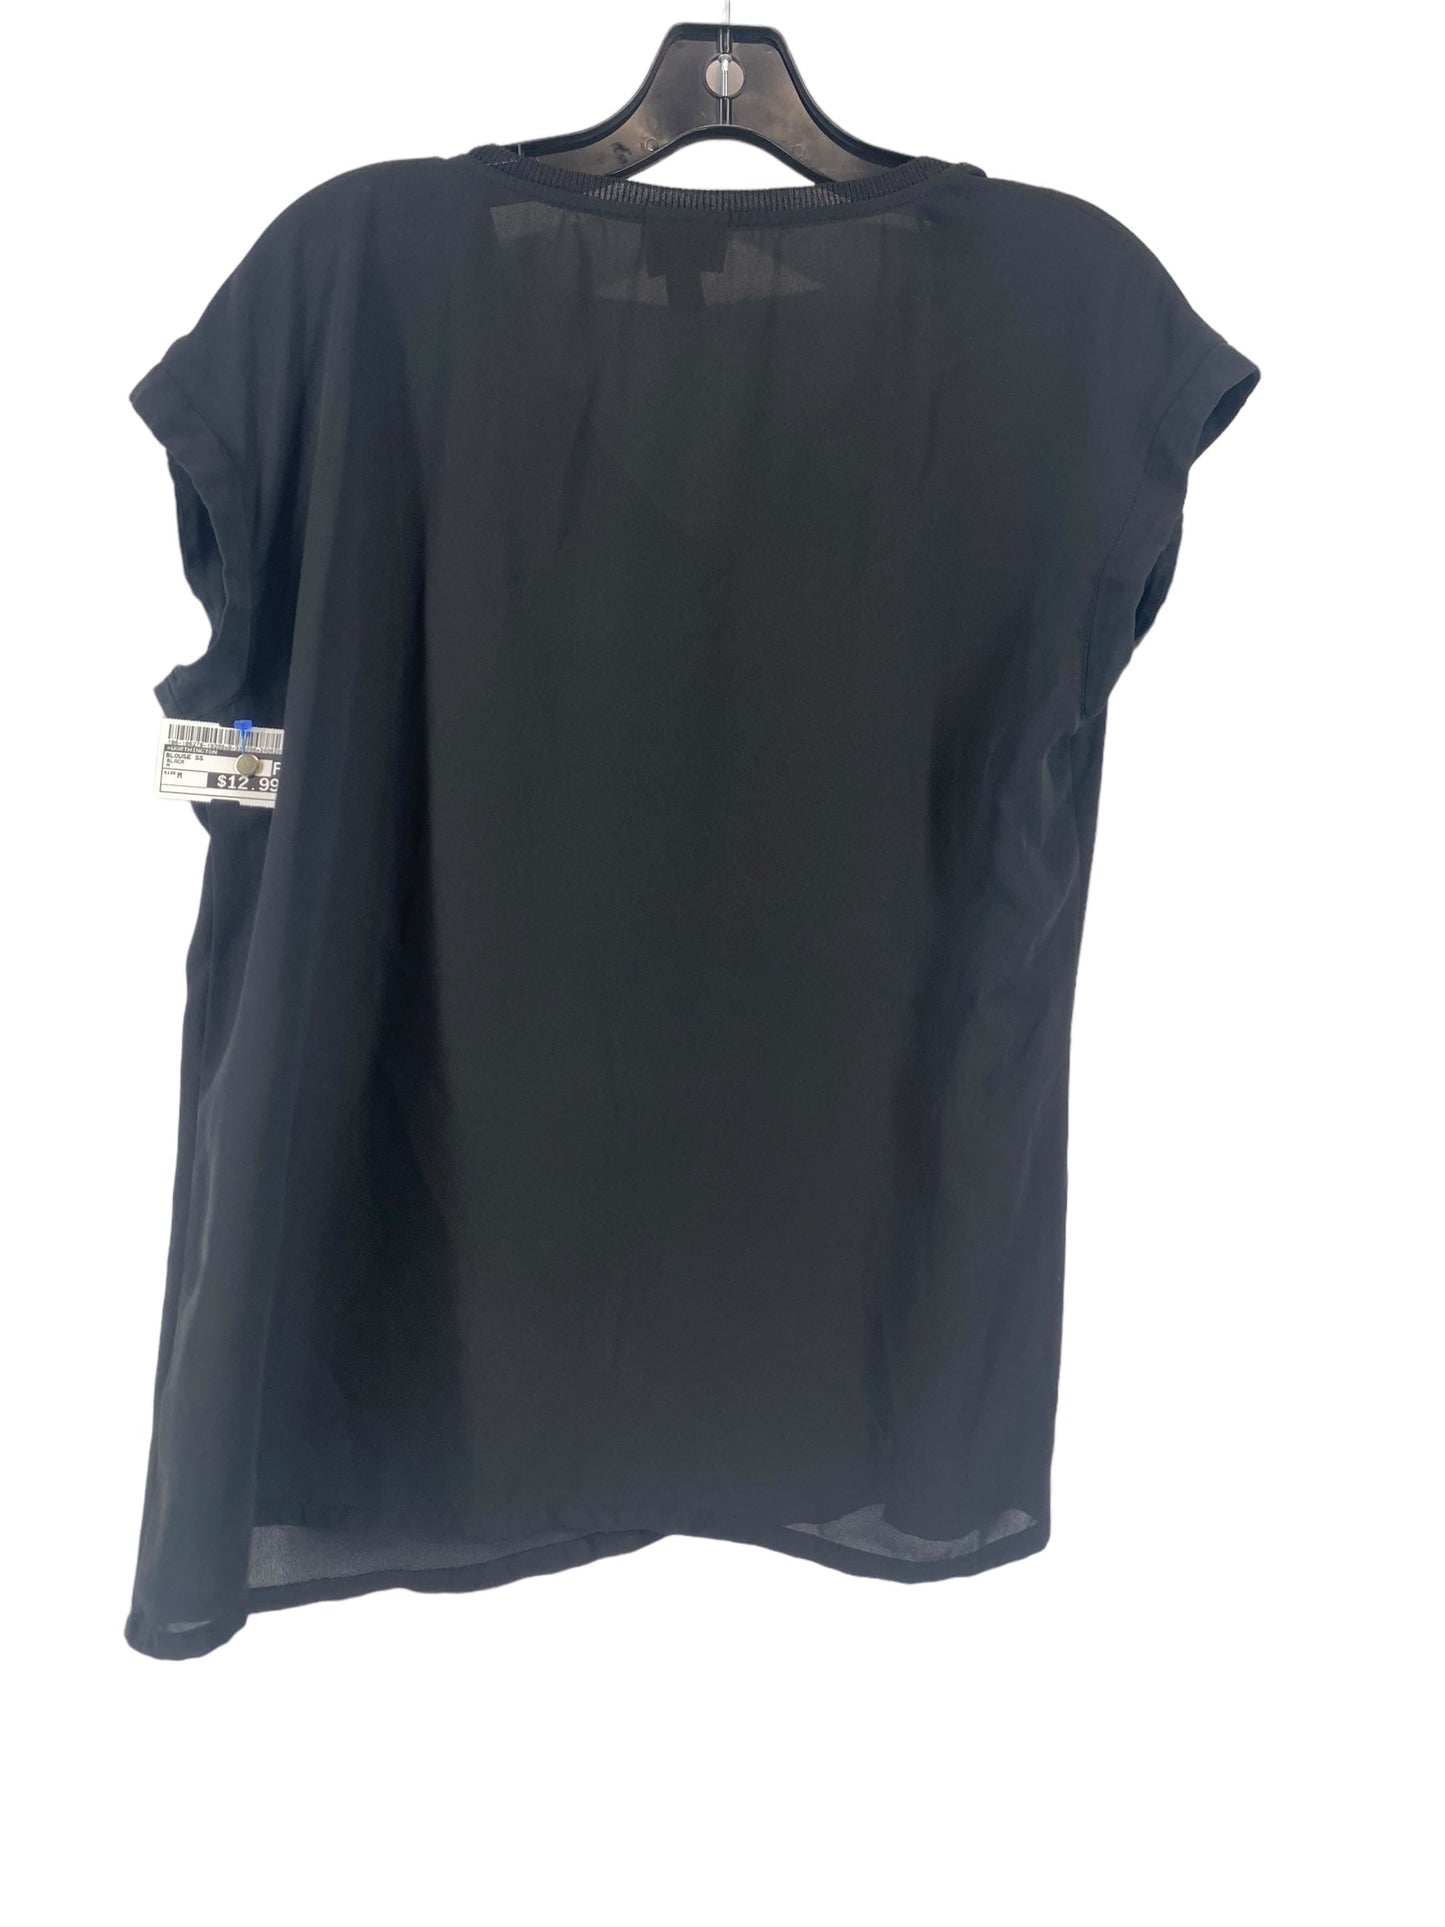 Black Blouse Short Sleeve Worthington, Size M